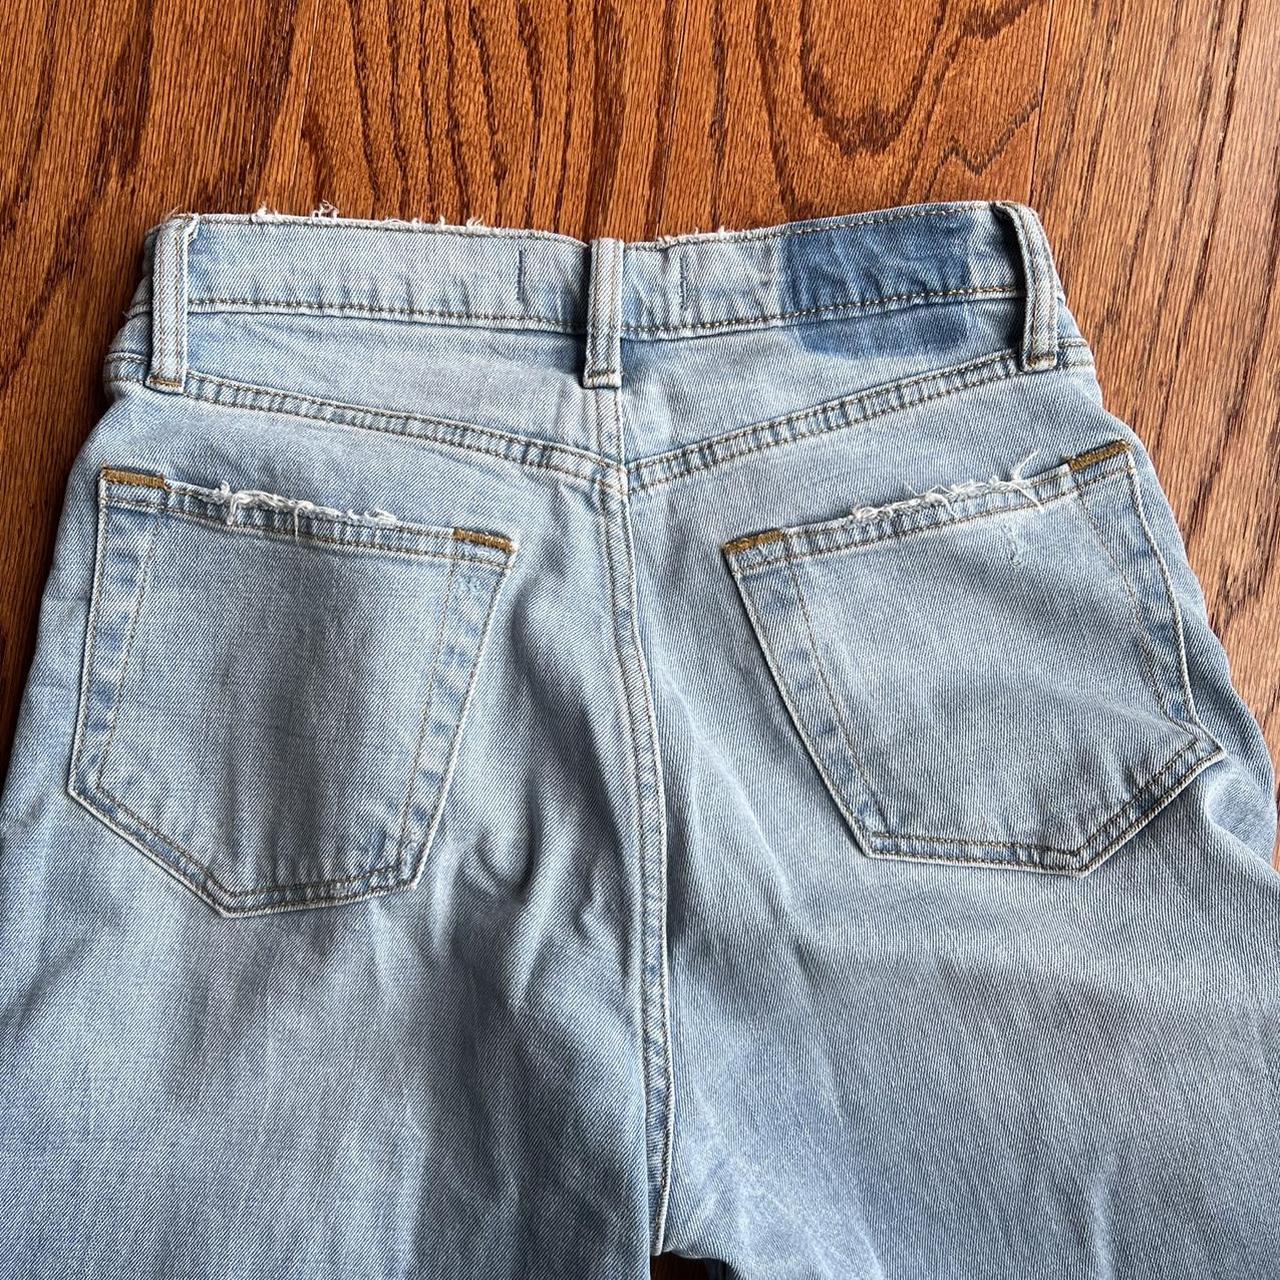 Abercrombie curve love jeans!!!!! Size 26/2!... - Depop